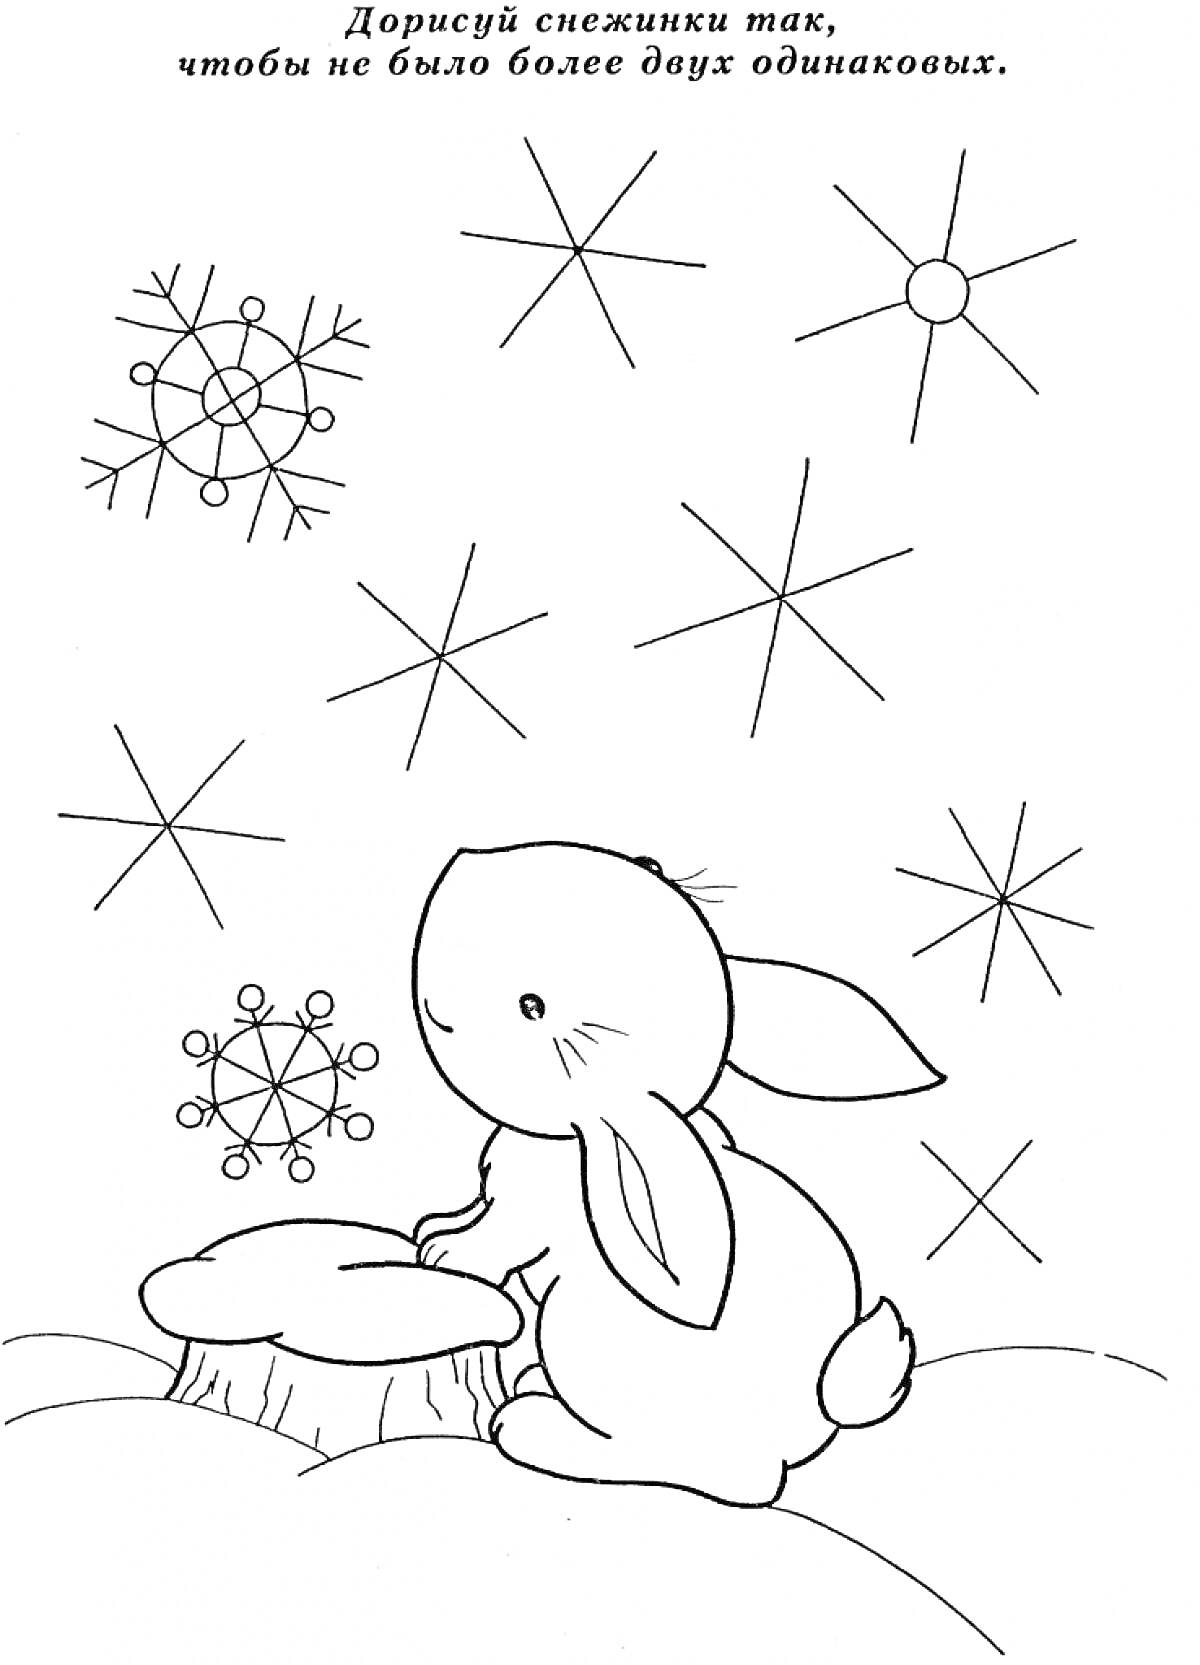 Зайчик, сидящий на пеньке среди снежинок